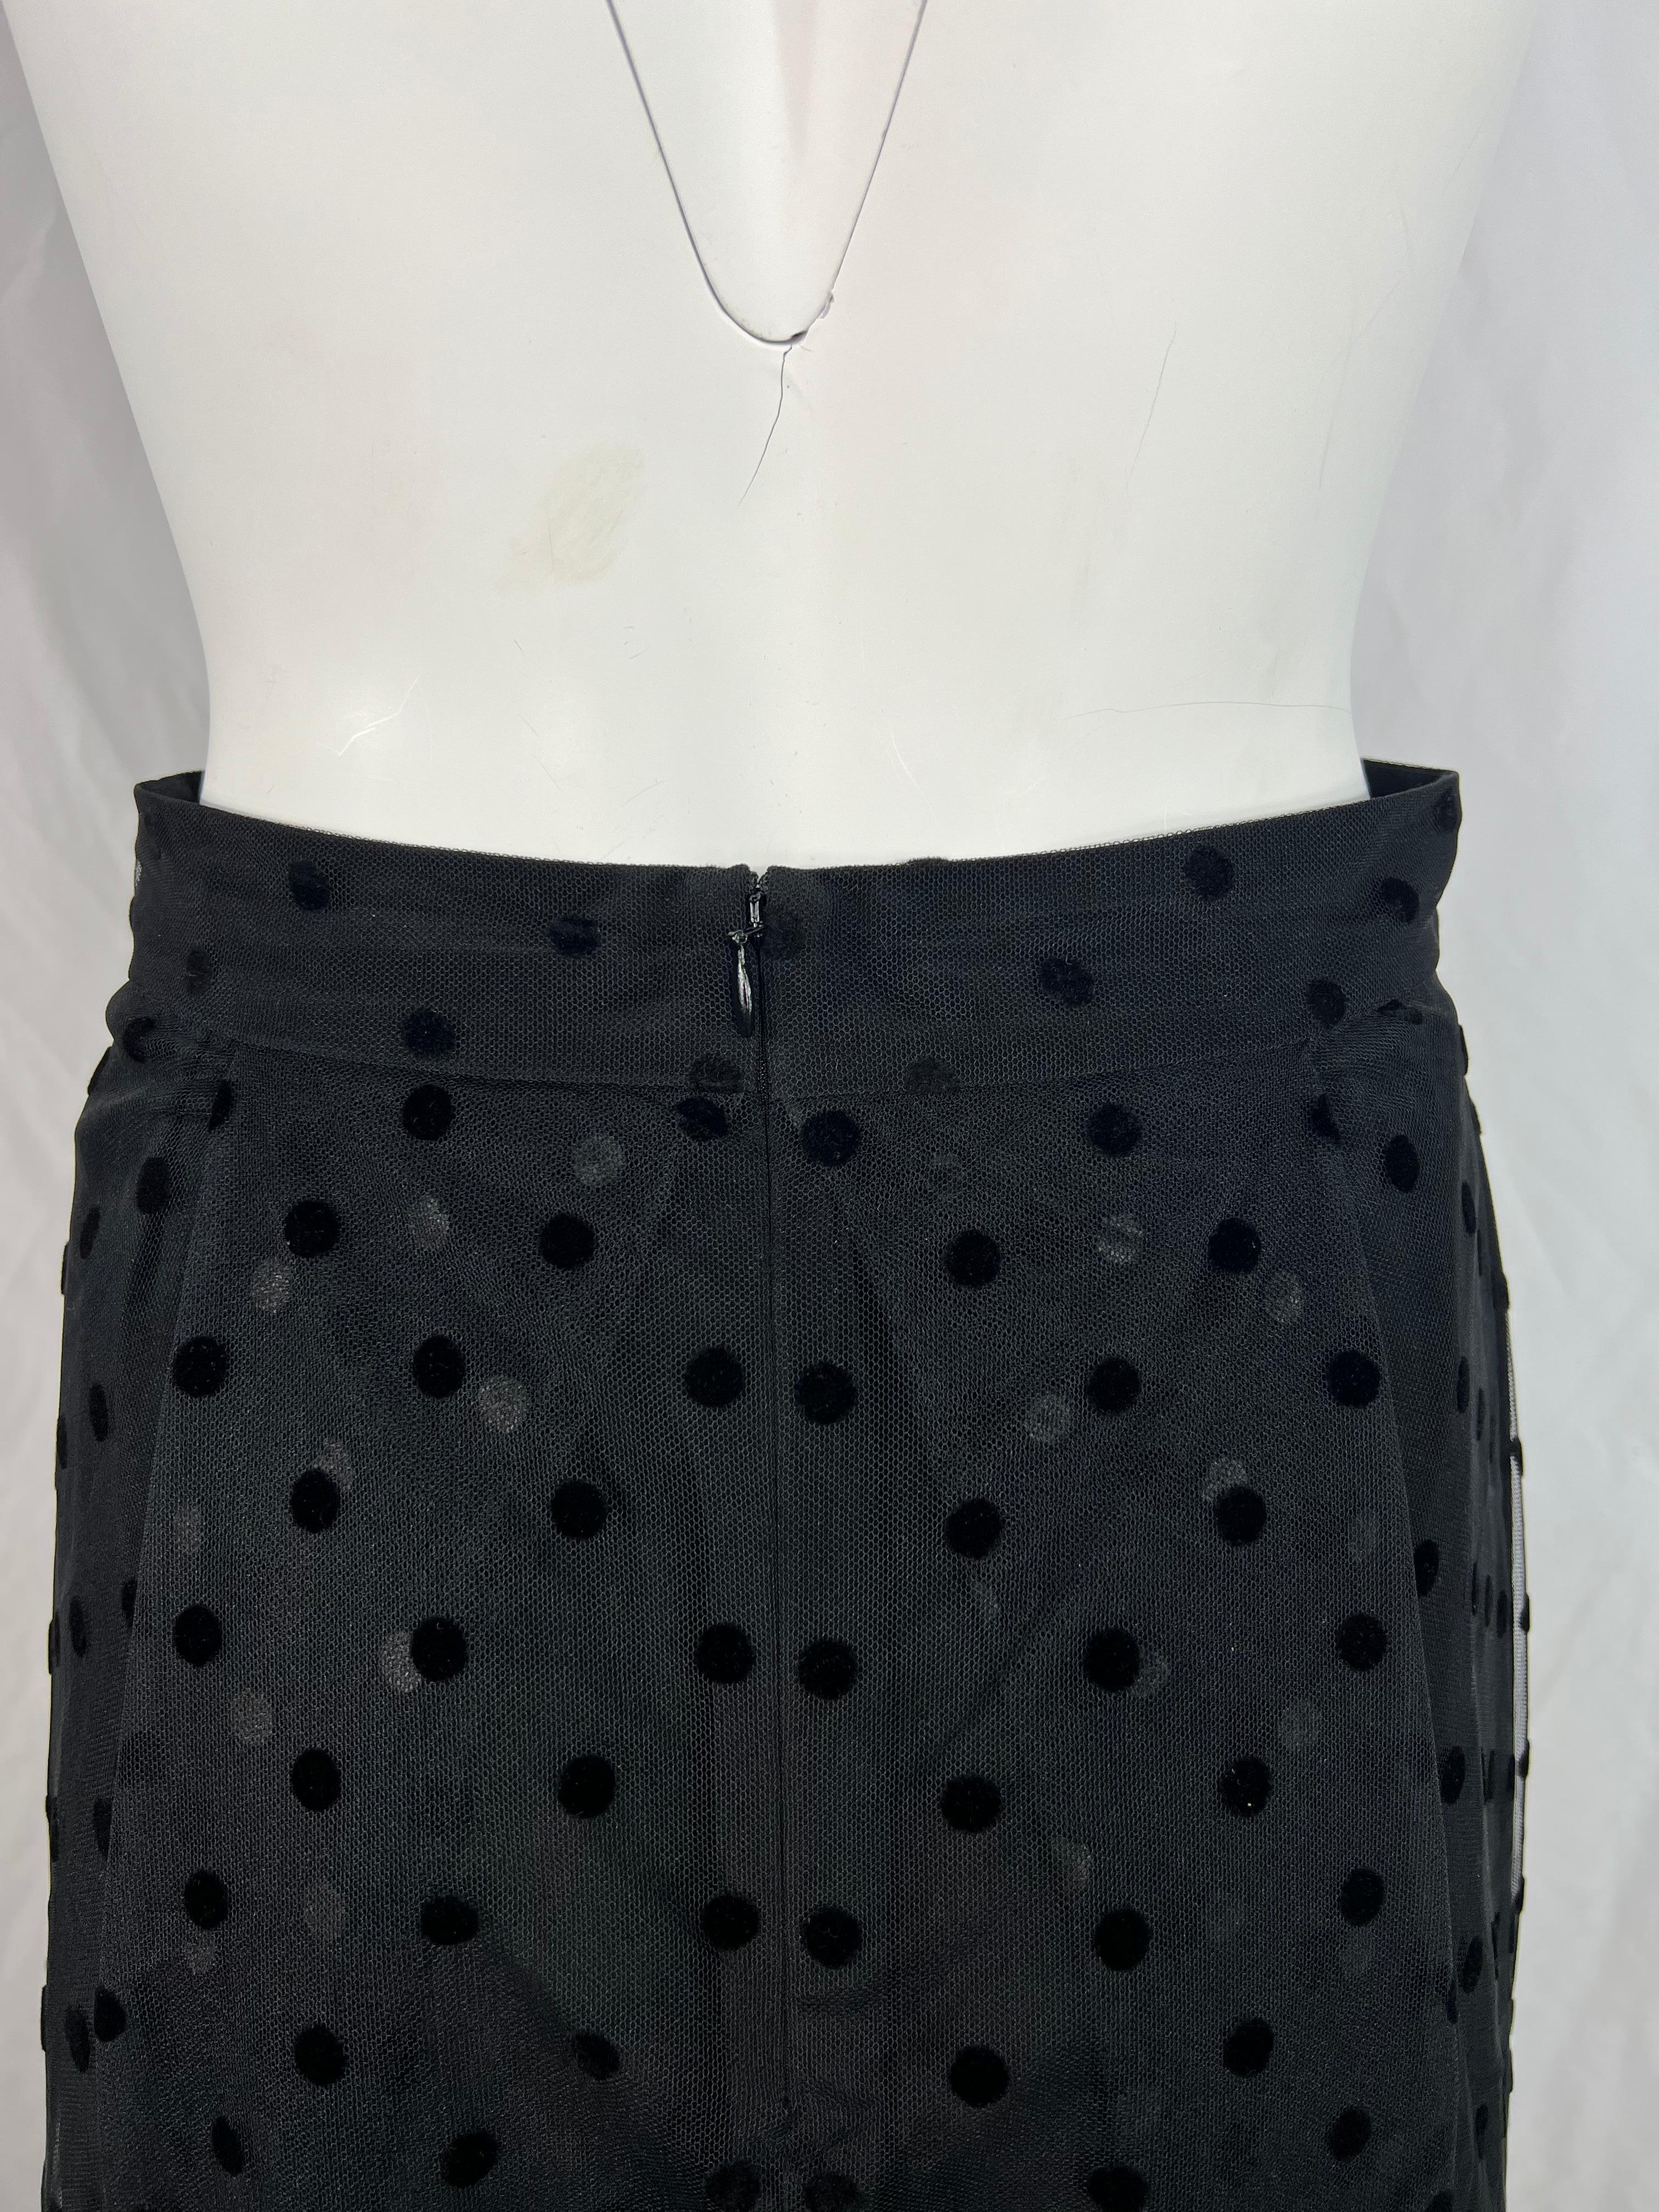 Huishan Zhang Black Polka Dot Midi Skirt, Size 4 For Sale 3